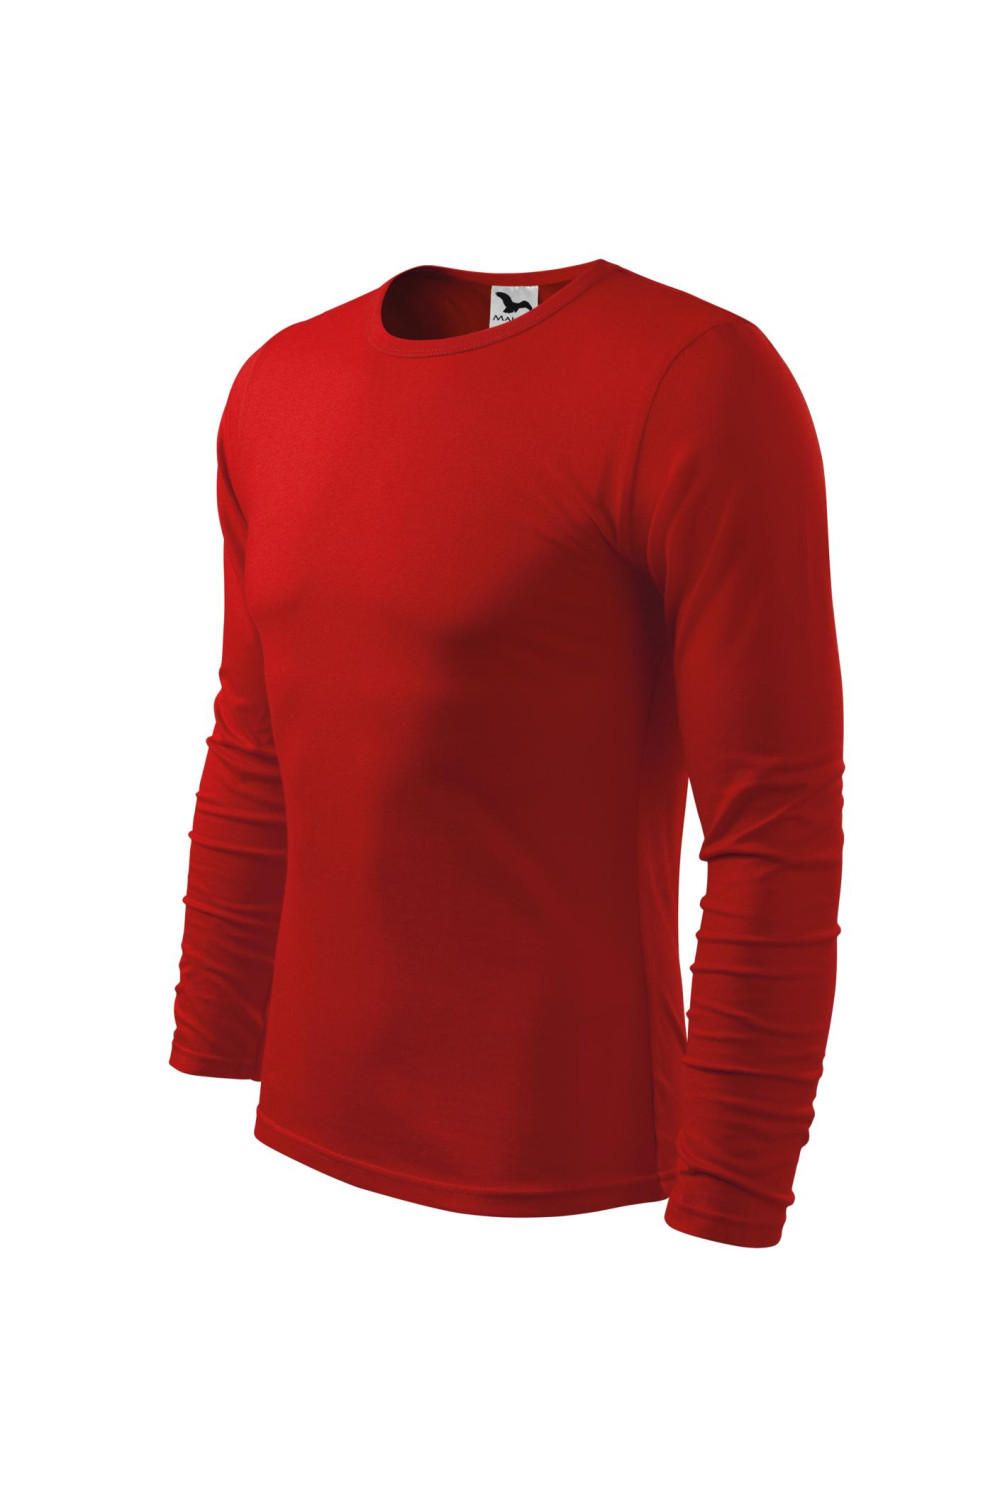 FIT-T LS 119 MALFINI ADLER Koszulka męska fitness z długim rękawem 100% bawełna czerwony